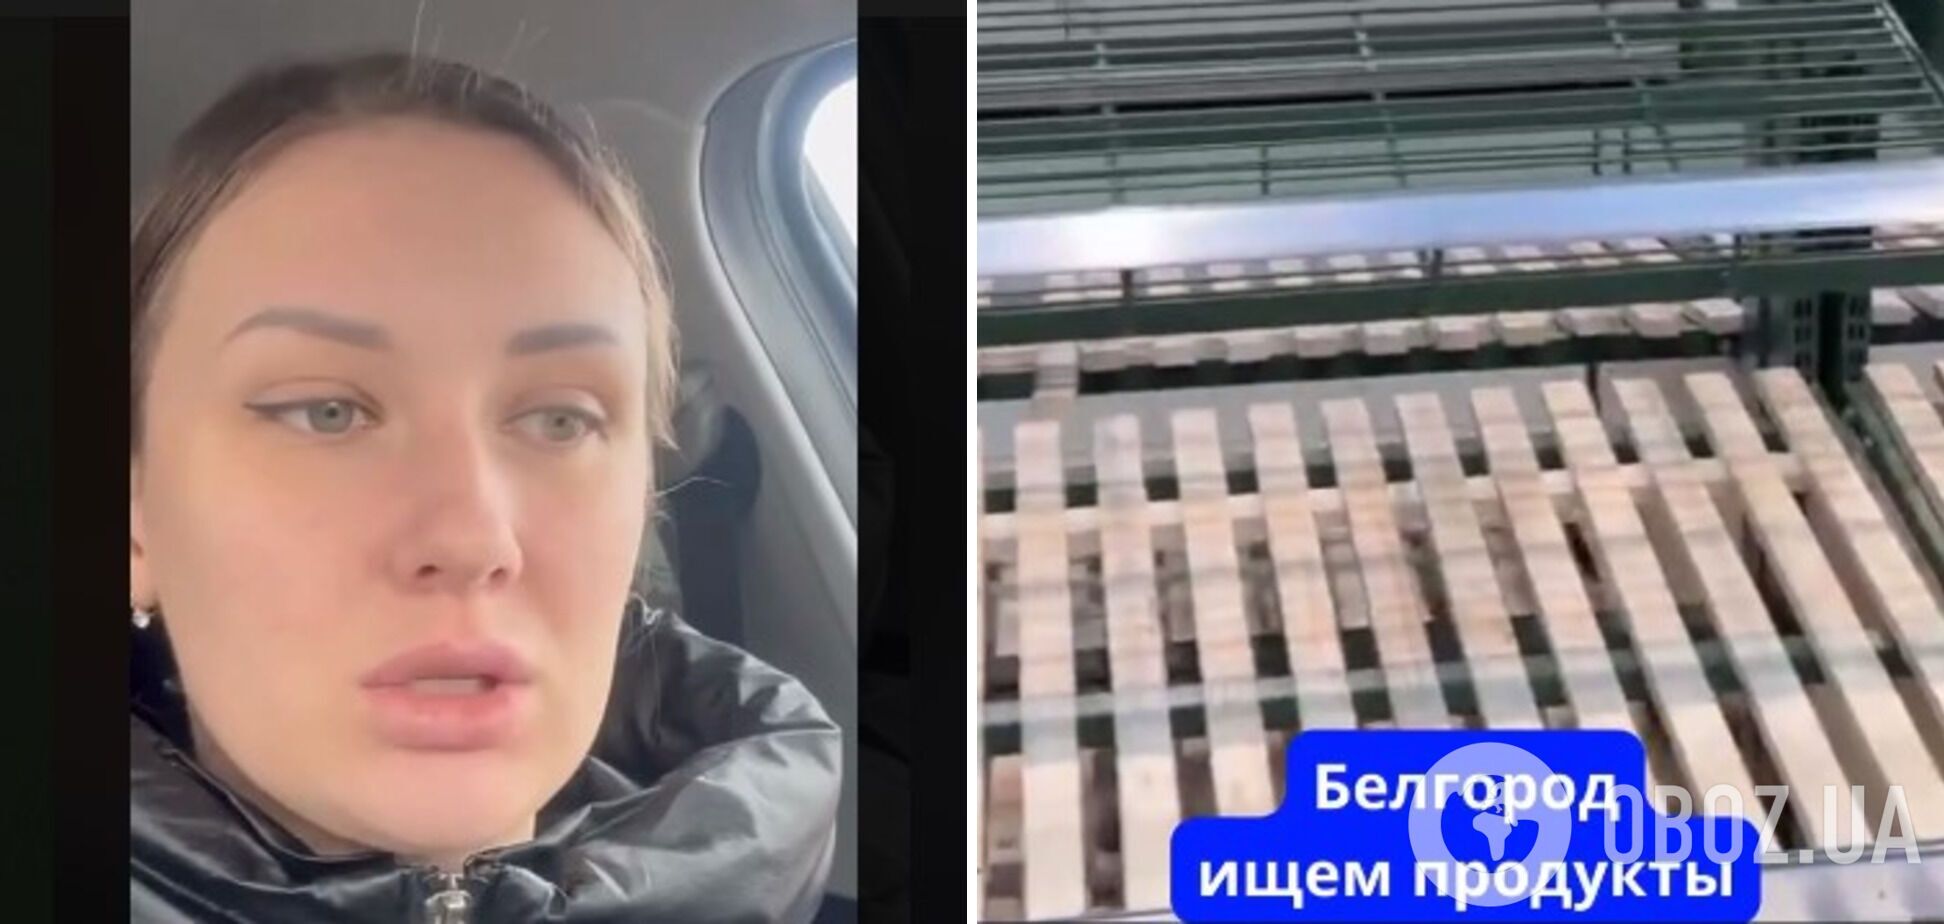 'Нічого немає': мешканка Бєлгорода поскаржилася на пусті полиці в магазинах і отримала відповідь. Відео 